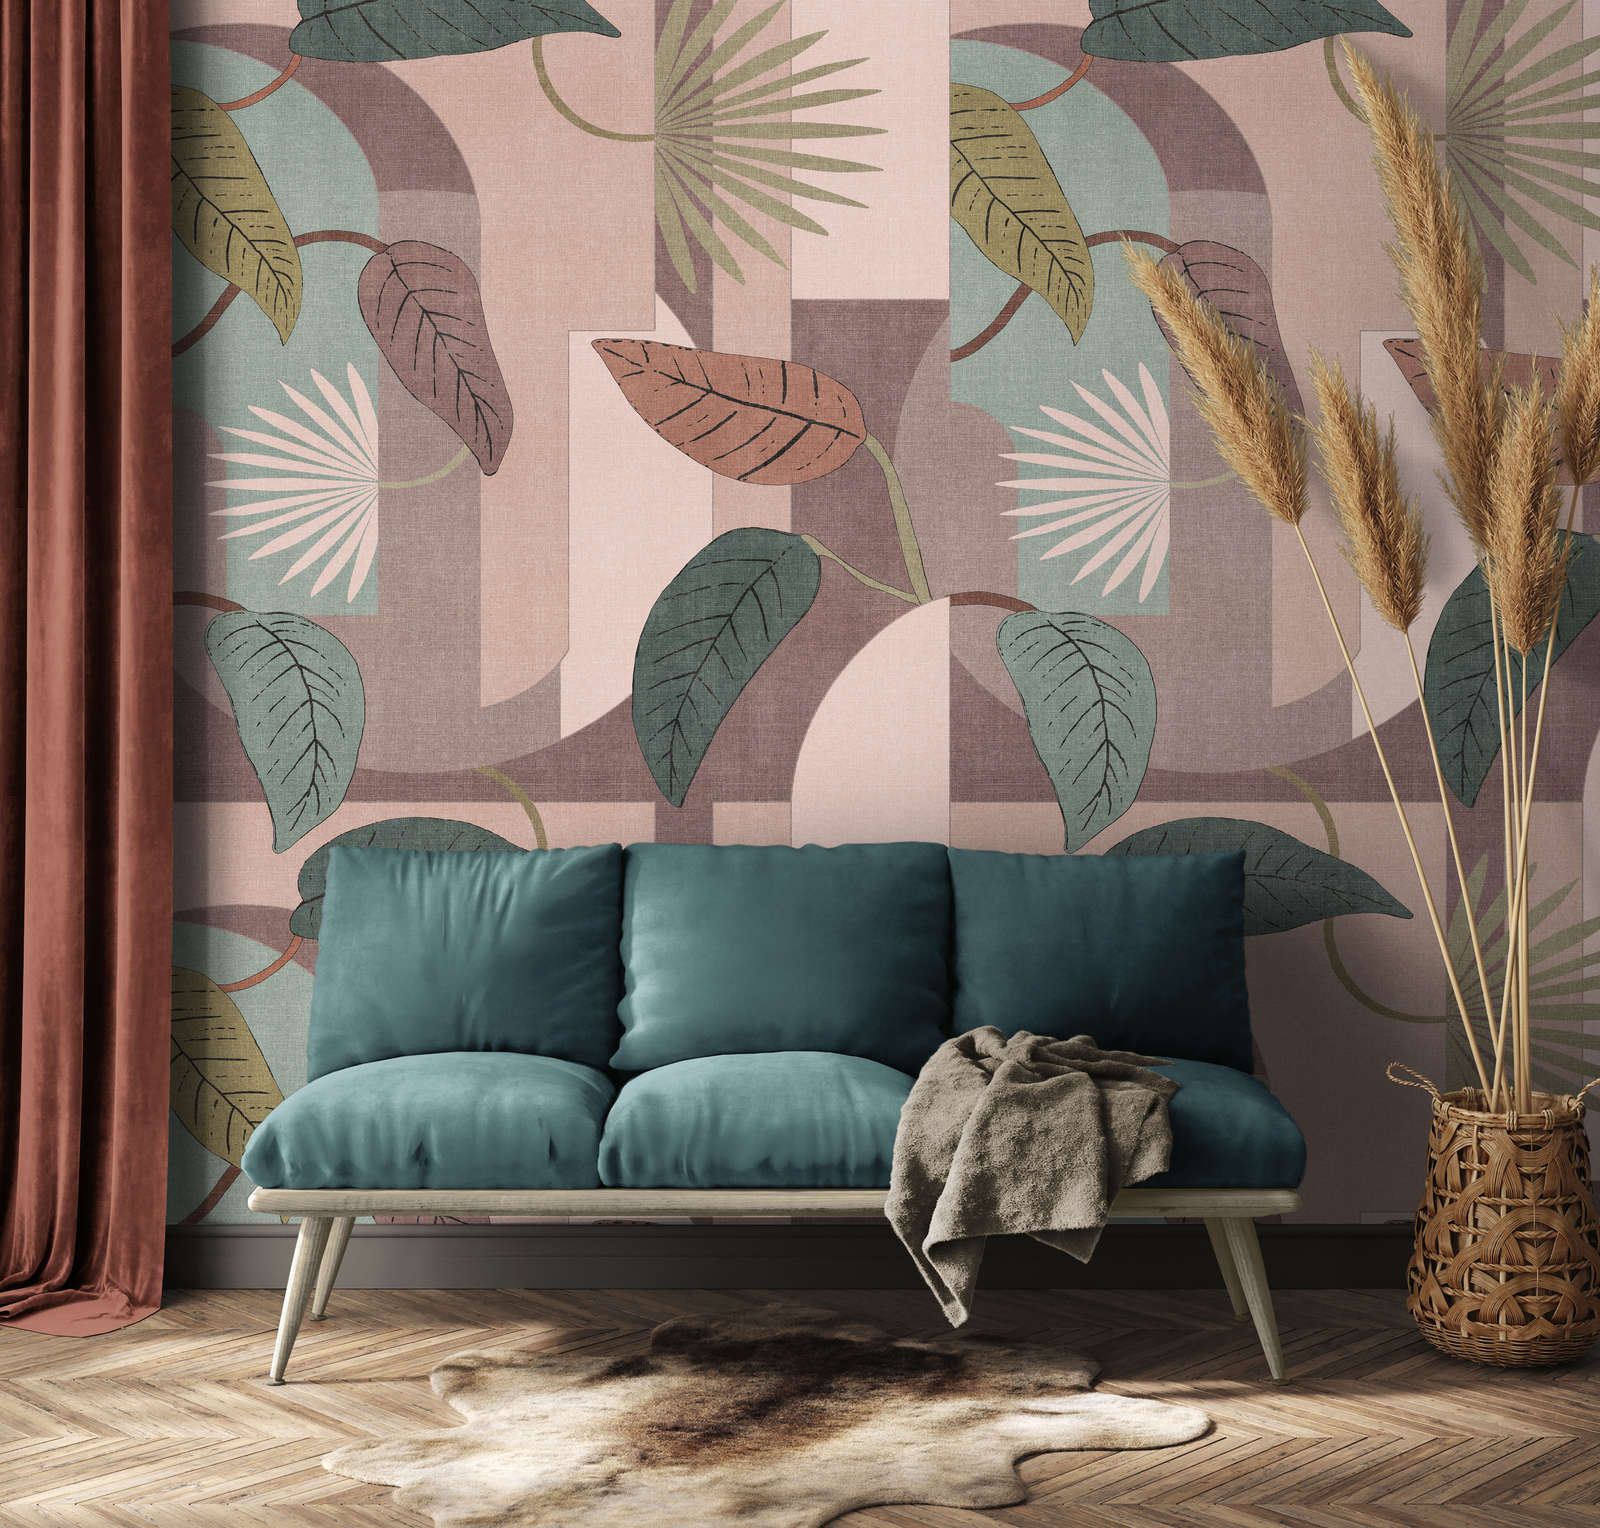             Papier peint intissé avec motif floral de feuilles et formes abstraites - rose, turquoise, beige
        